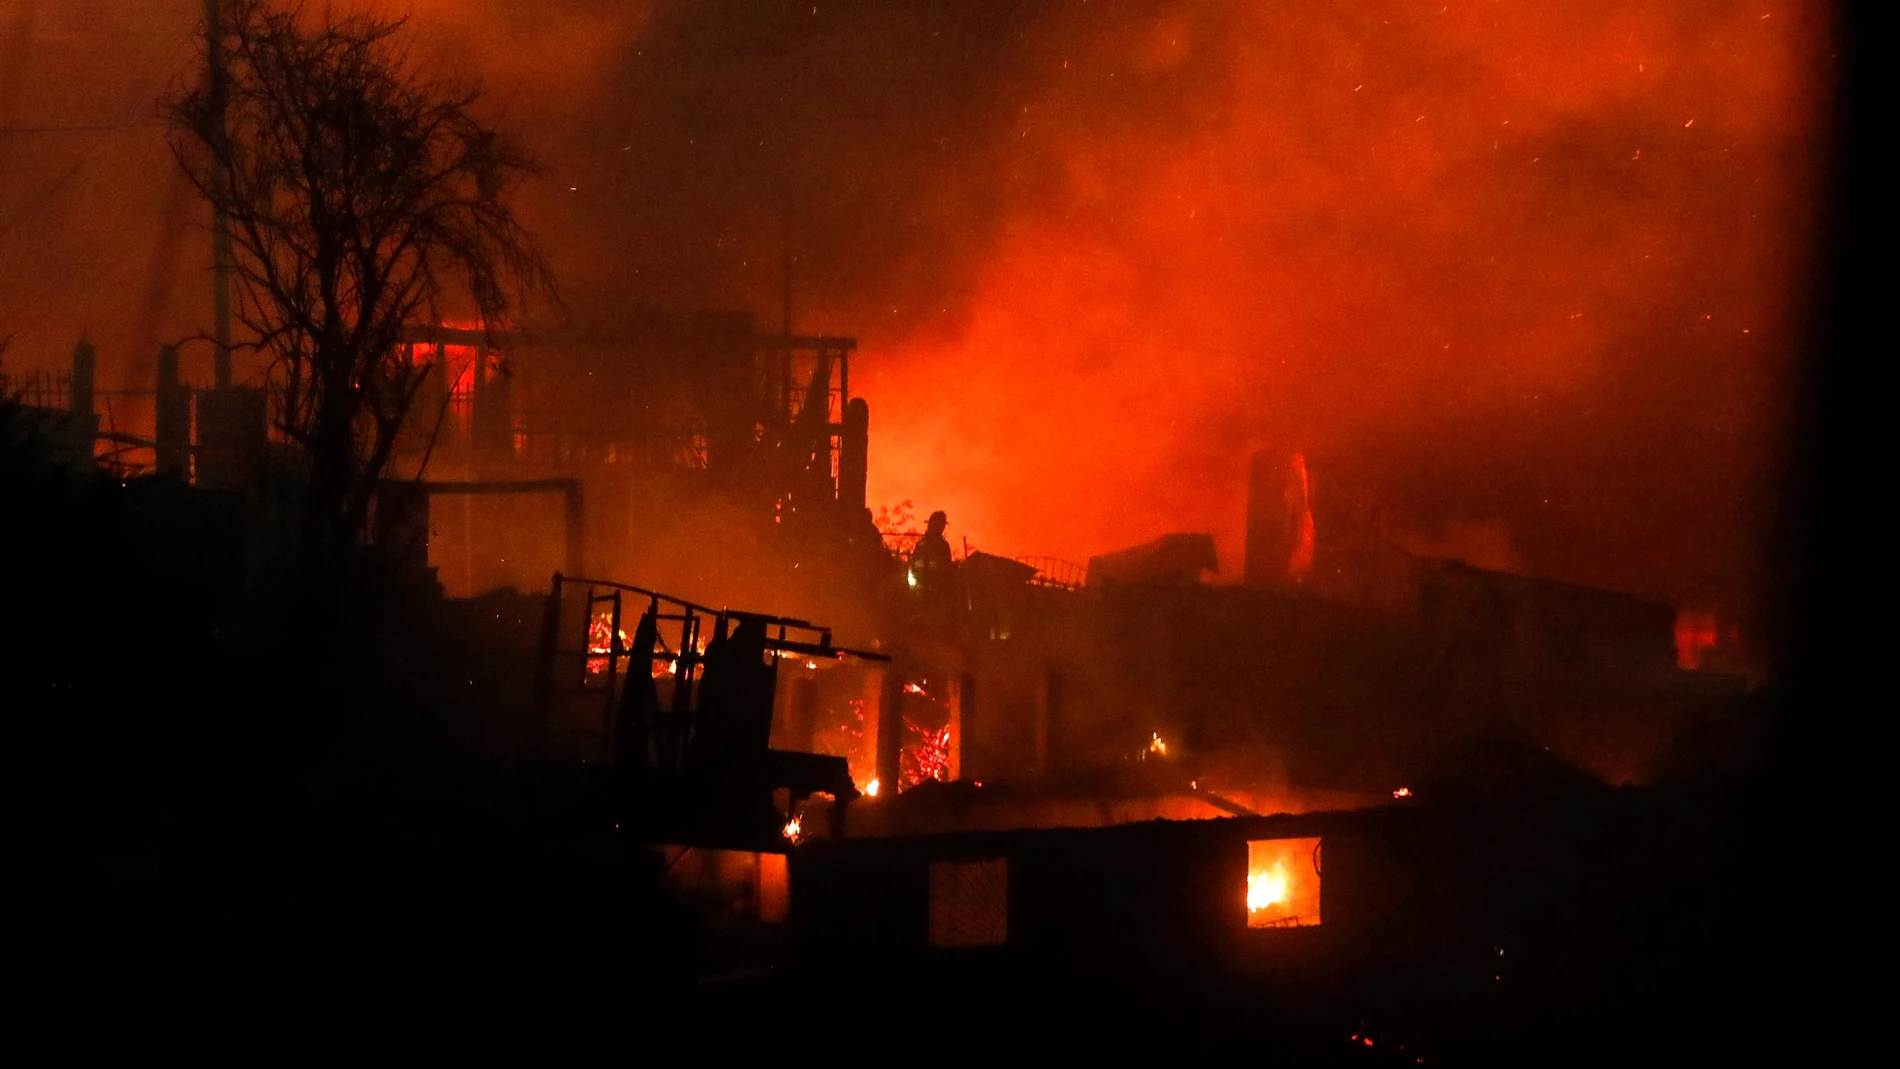 El fuego asalta a los vecinos de la chilena Valparaíso en plena Nochebuena